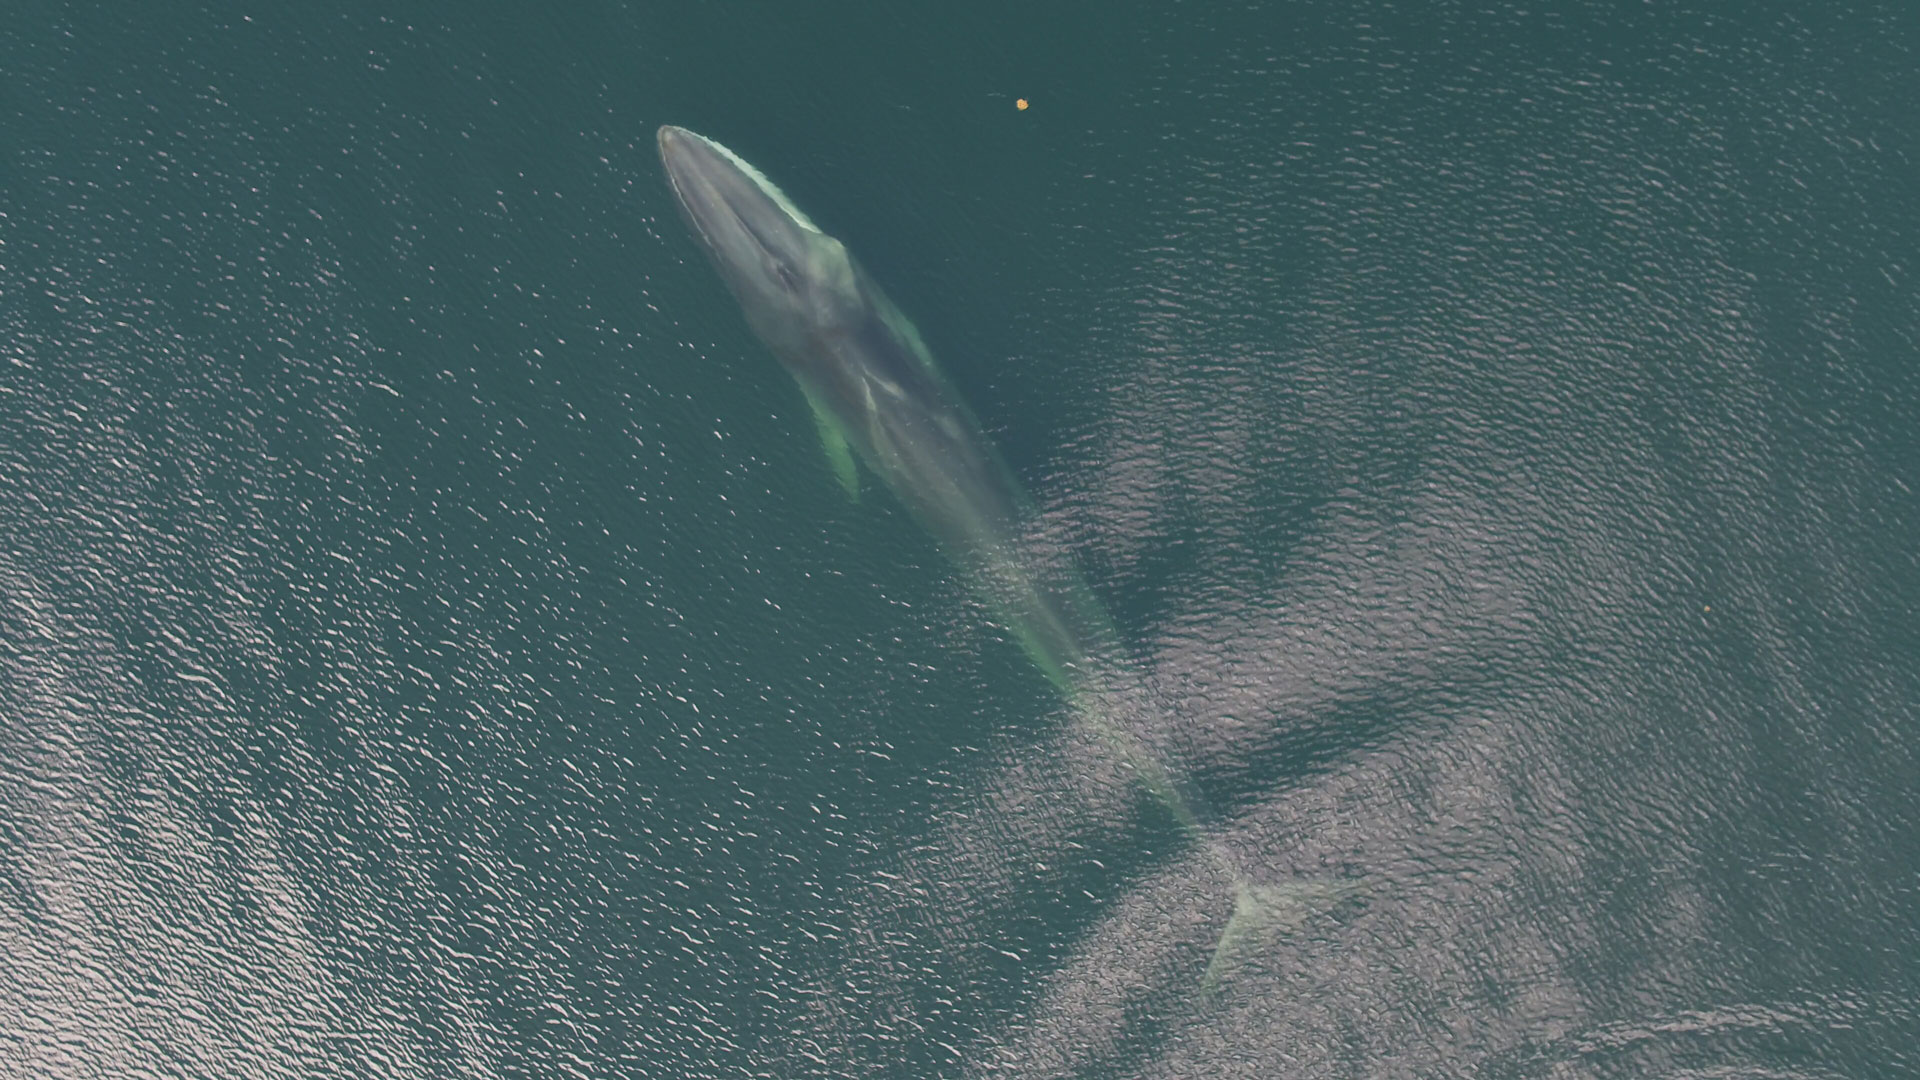 Baleine à bec commune laissant échapper un jet de vapeur à la surface de l'eau. Source : Hilary Moors-Murphy